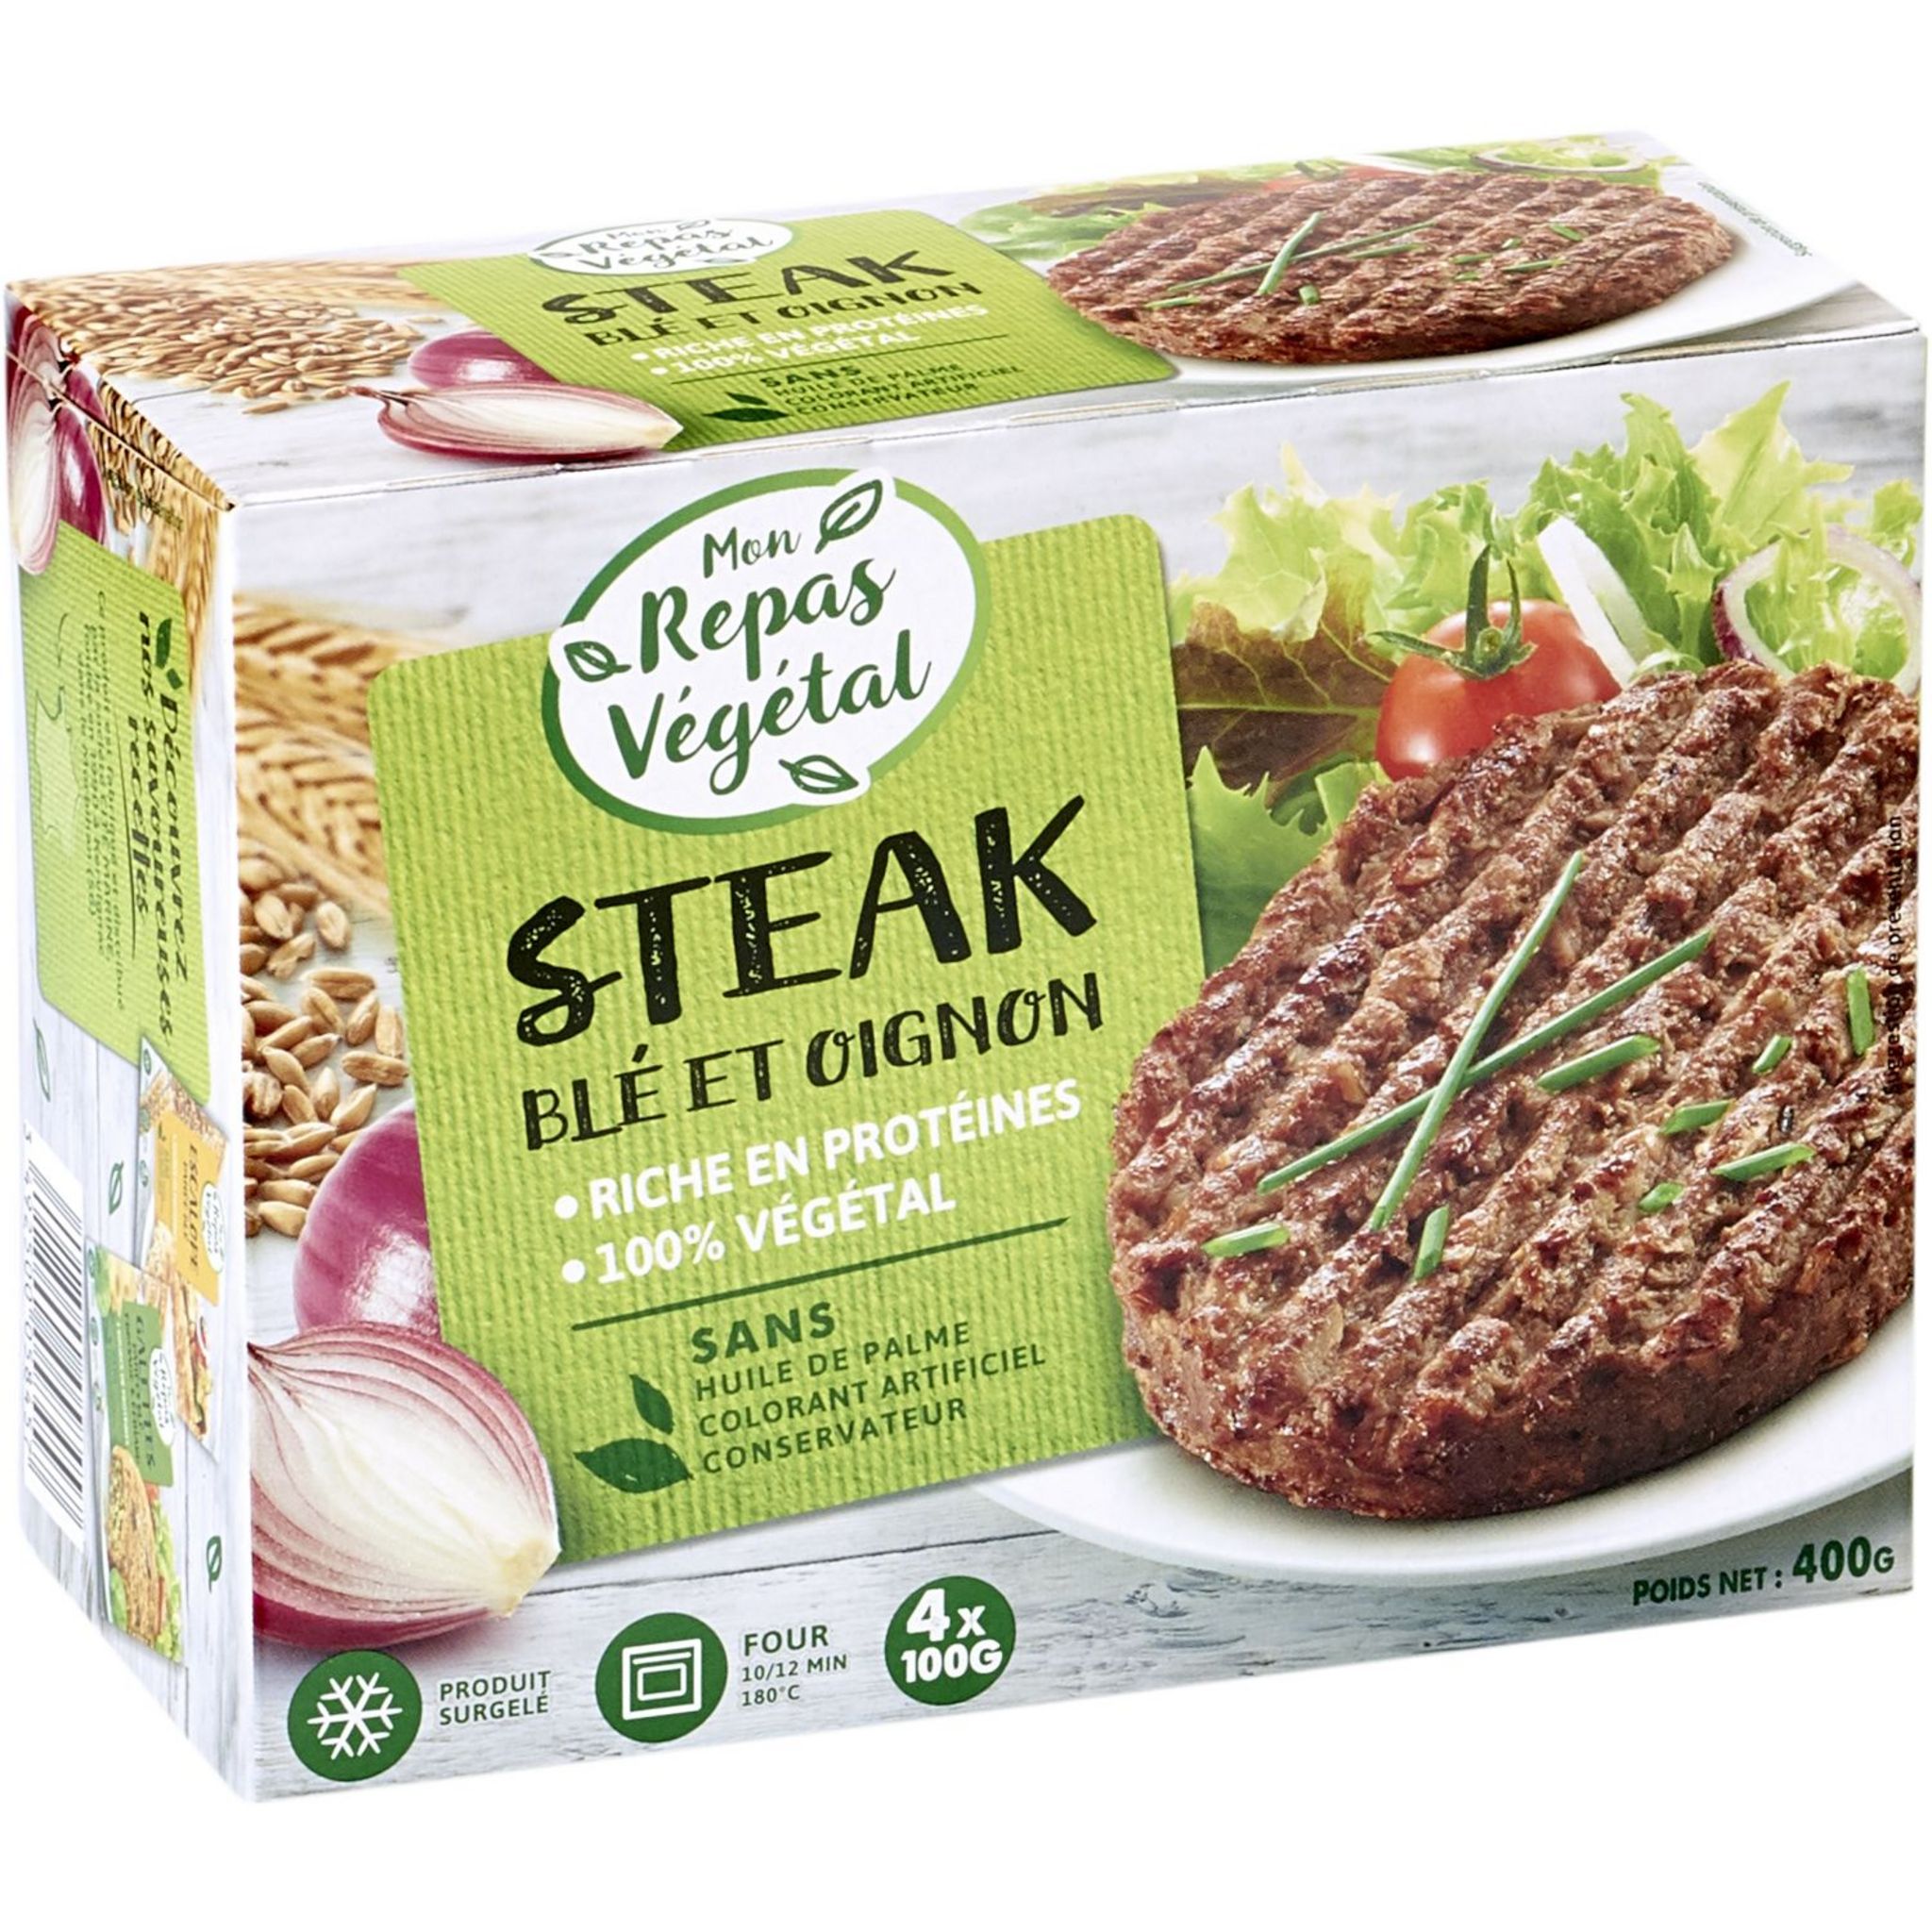 Steak végétal